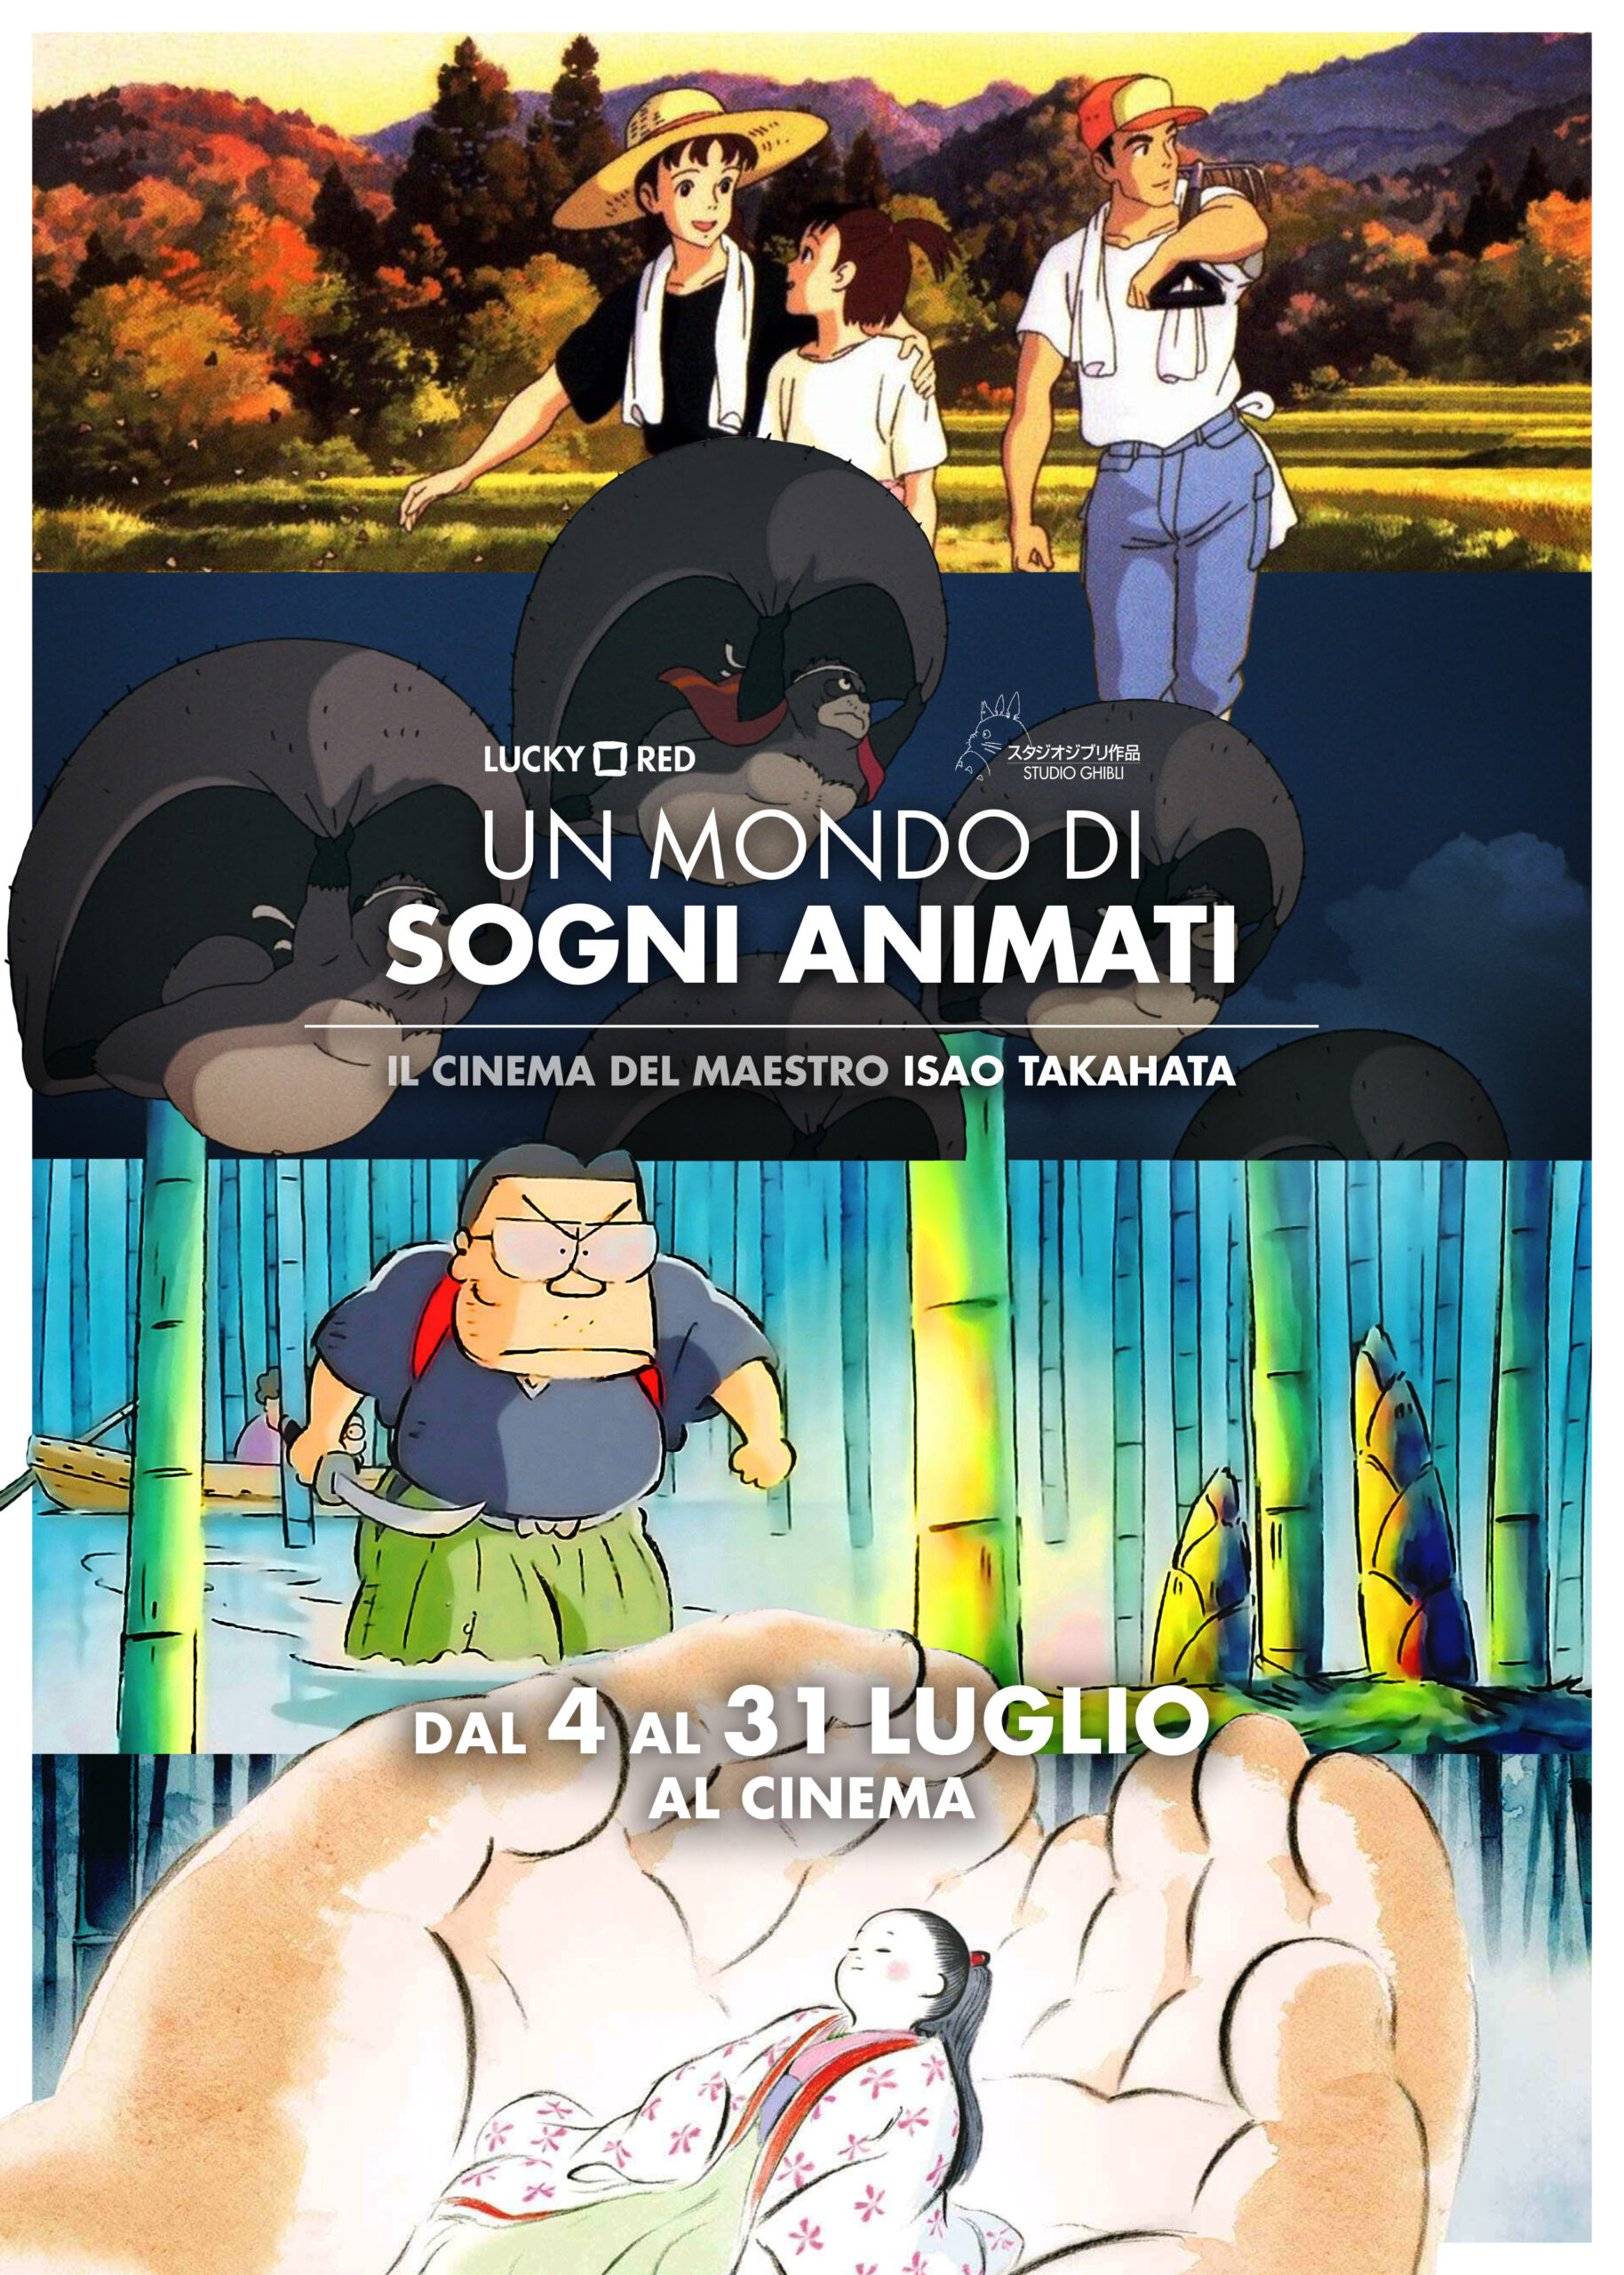 Studio Ghibli: dal 4 luglio torna la rassegna "Un mondo di sogni animati". Si parte con "Pioggia di ricordi" di Isao Takahata